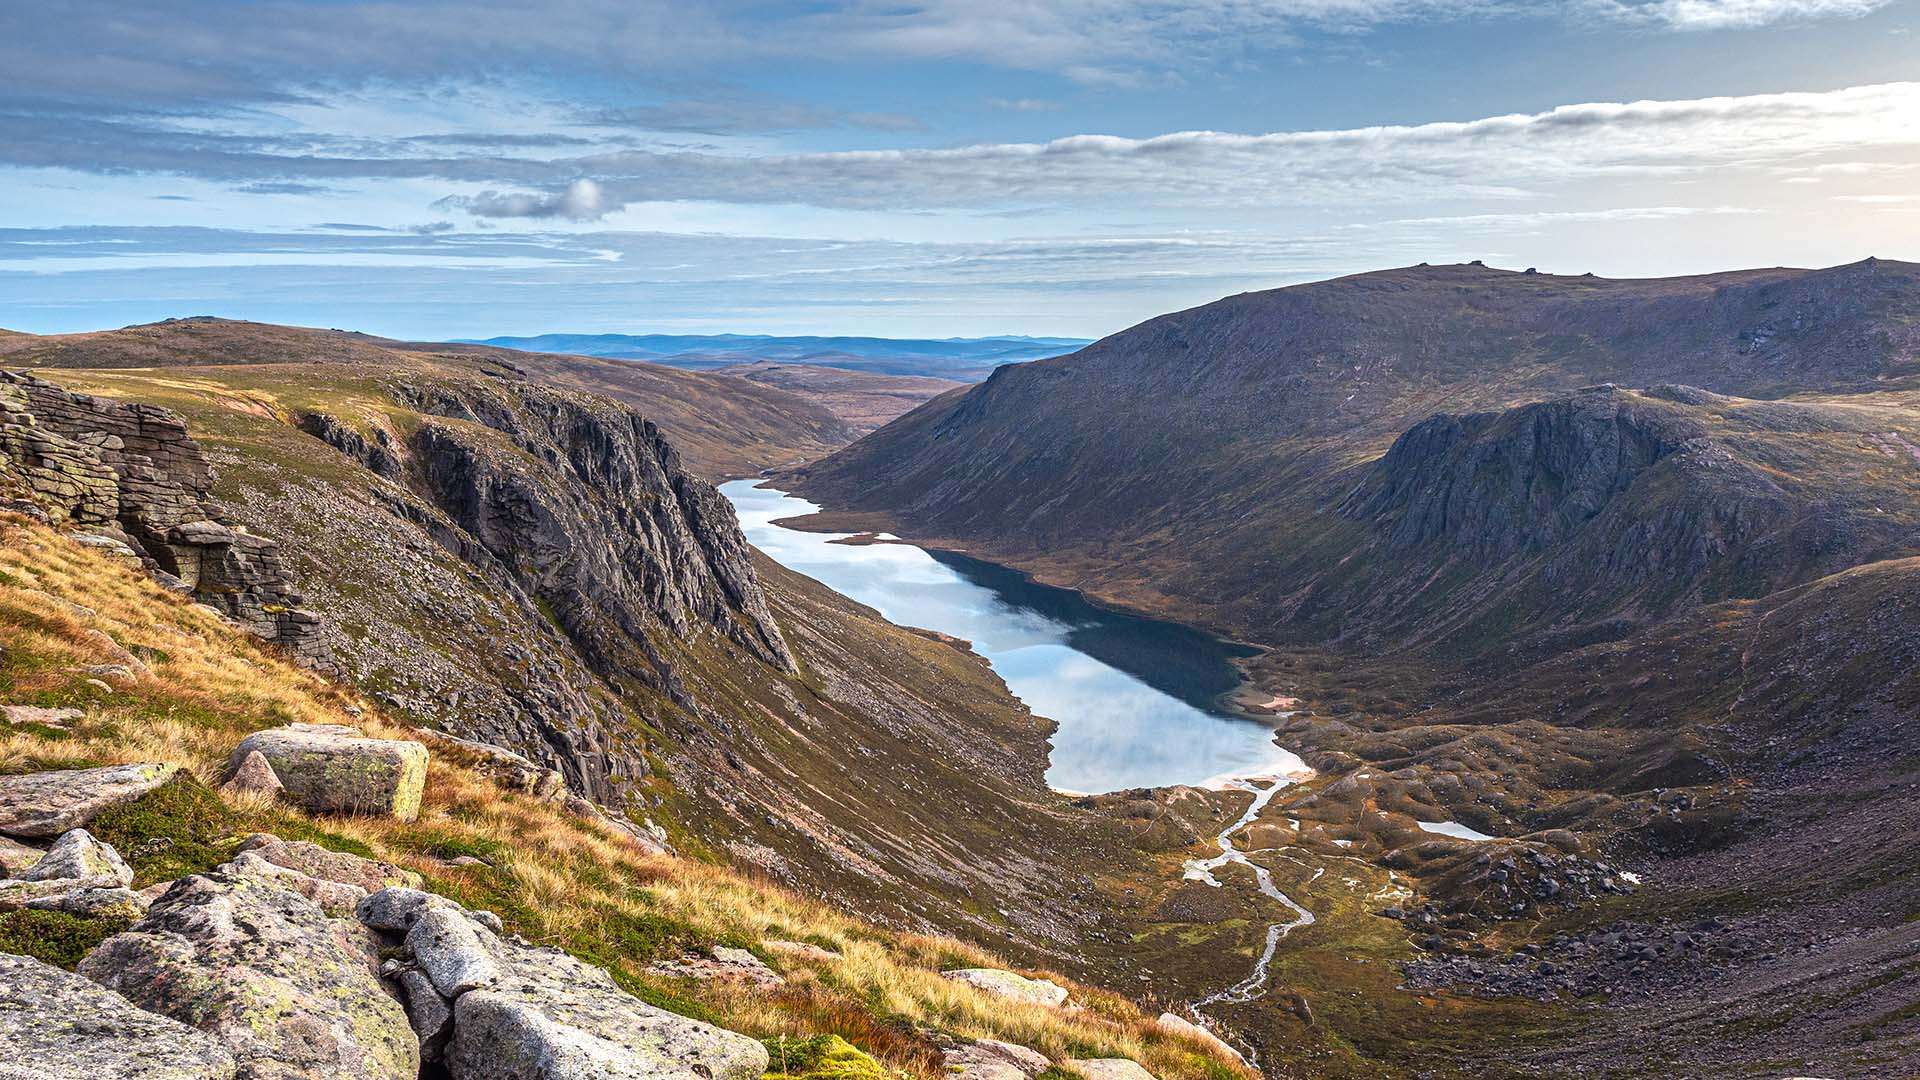 منتزة كيرنجورمس الوطني - اسكتلندا على قائمة الأماكن التي يجب مشاهدتها.   الصورة : جيتي صور